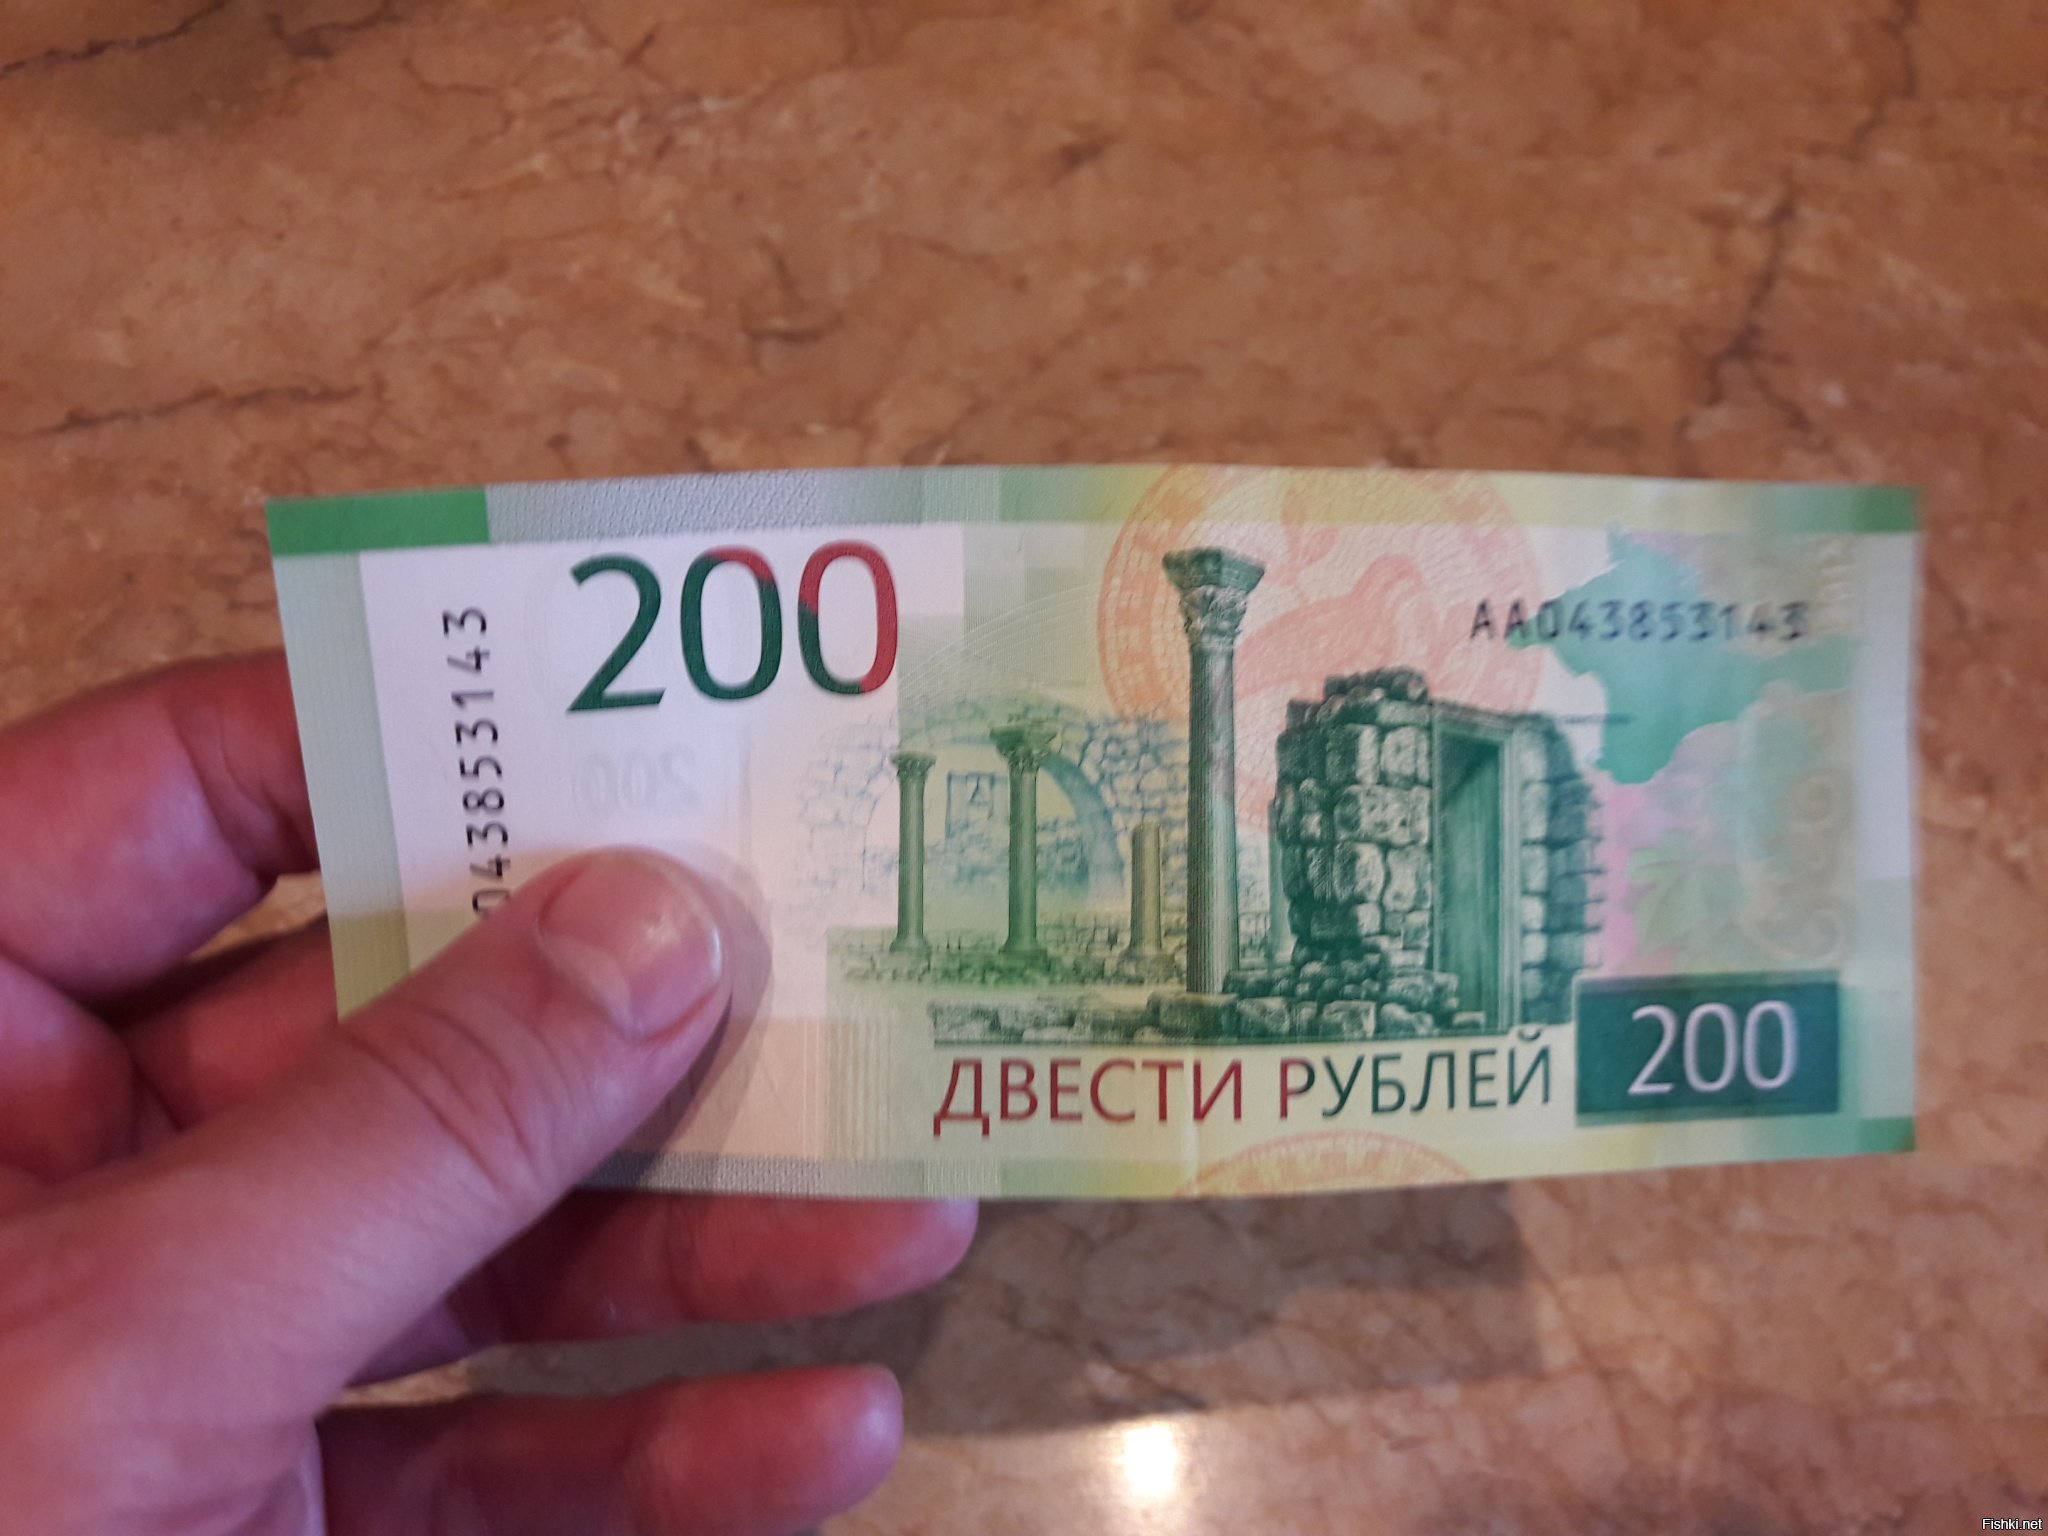 200 рублей 2019. 200 Рублей груз 200. 200 Штук. На улице 200 руб.